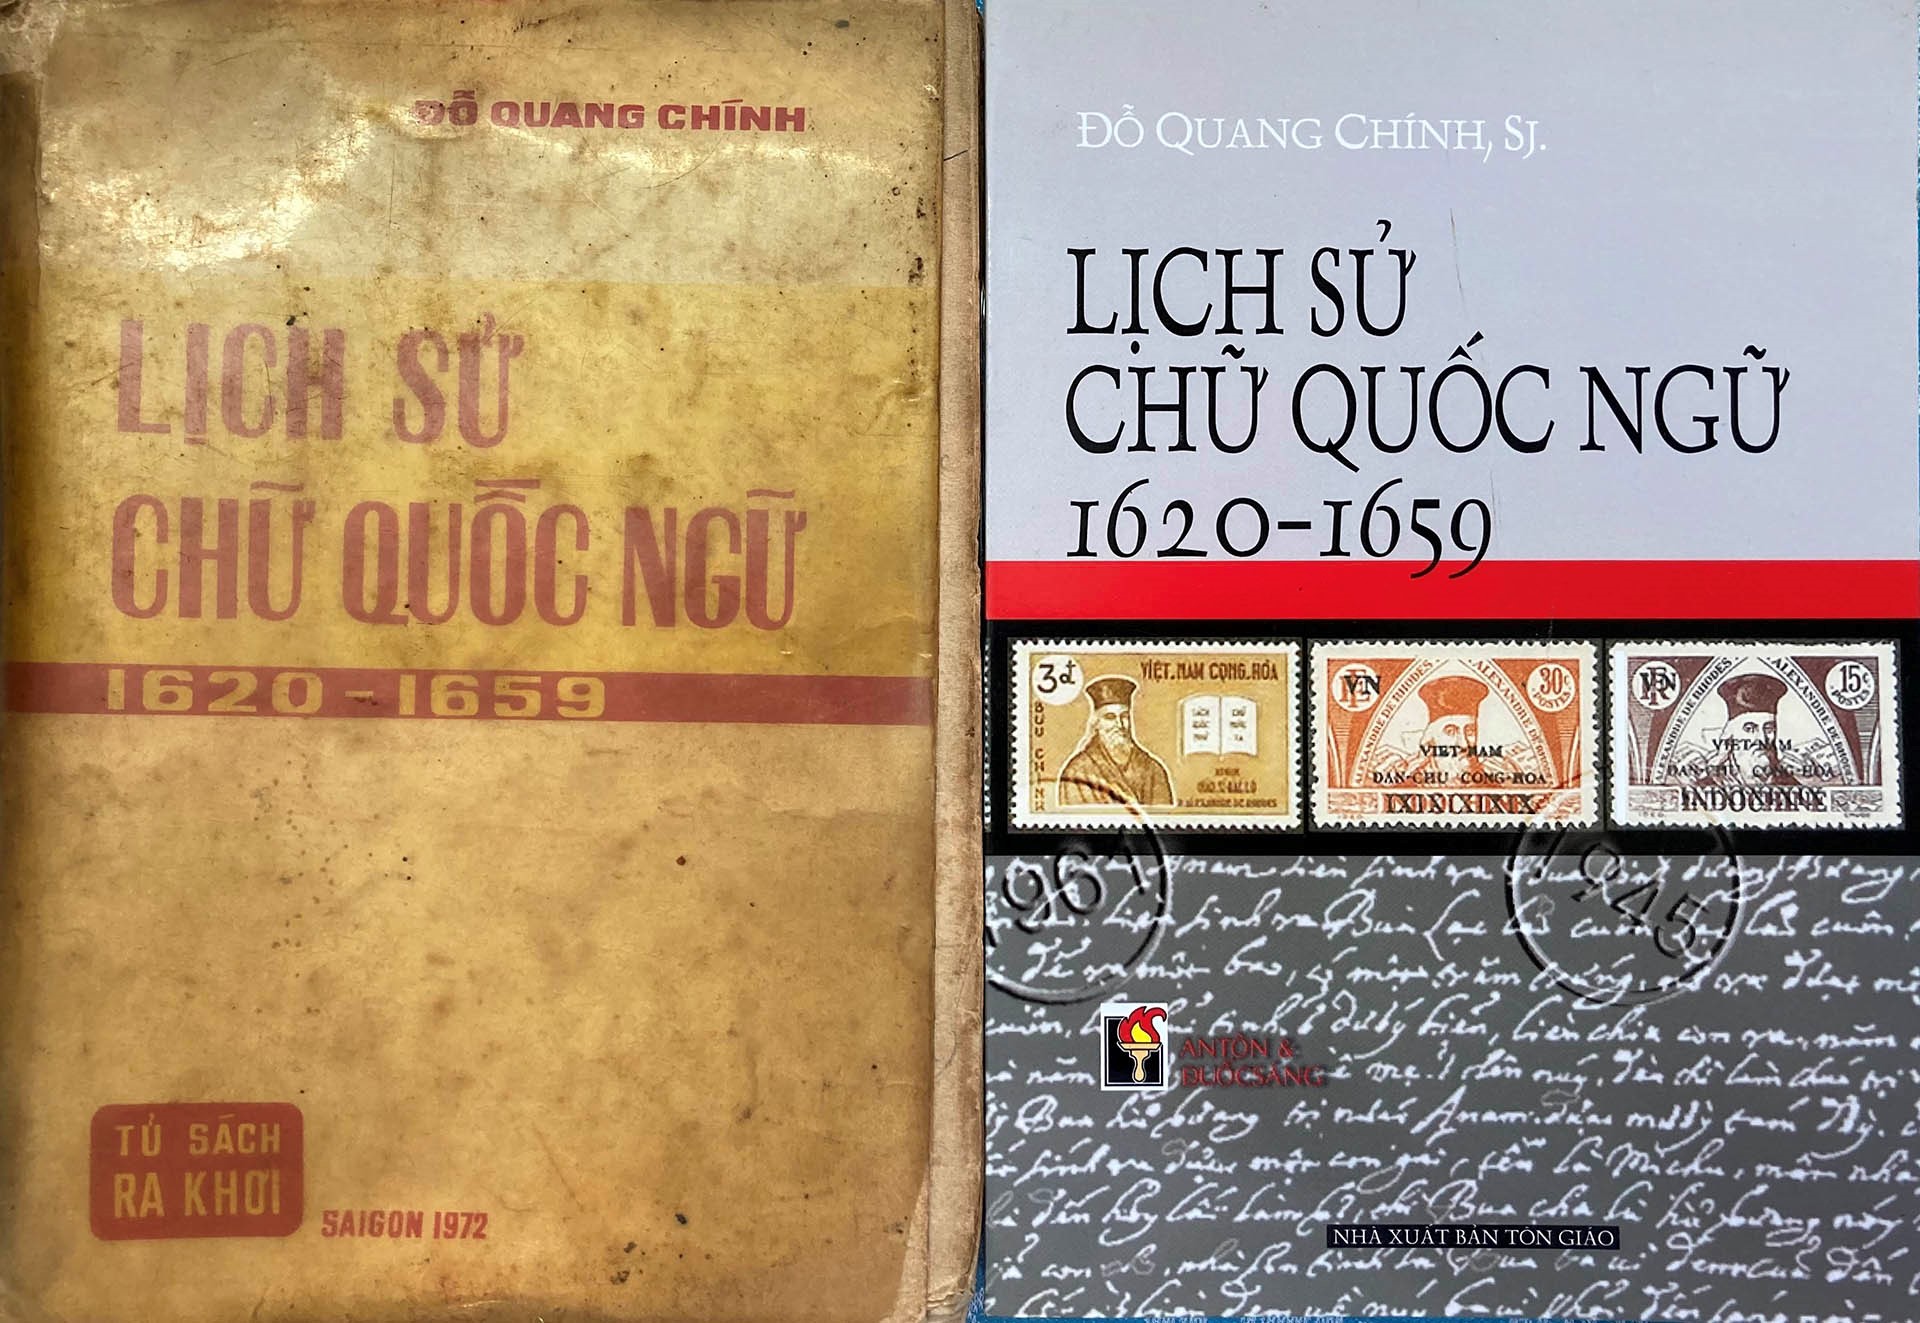 Phỏng vấn linh mục Đỗ Quang Chính về cuốn sách Lịch sử chữ Quốc ngữ